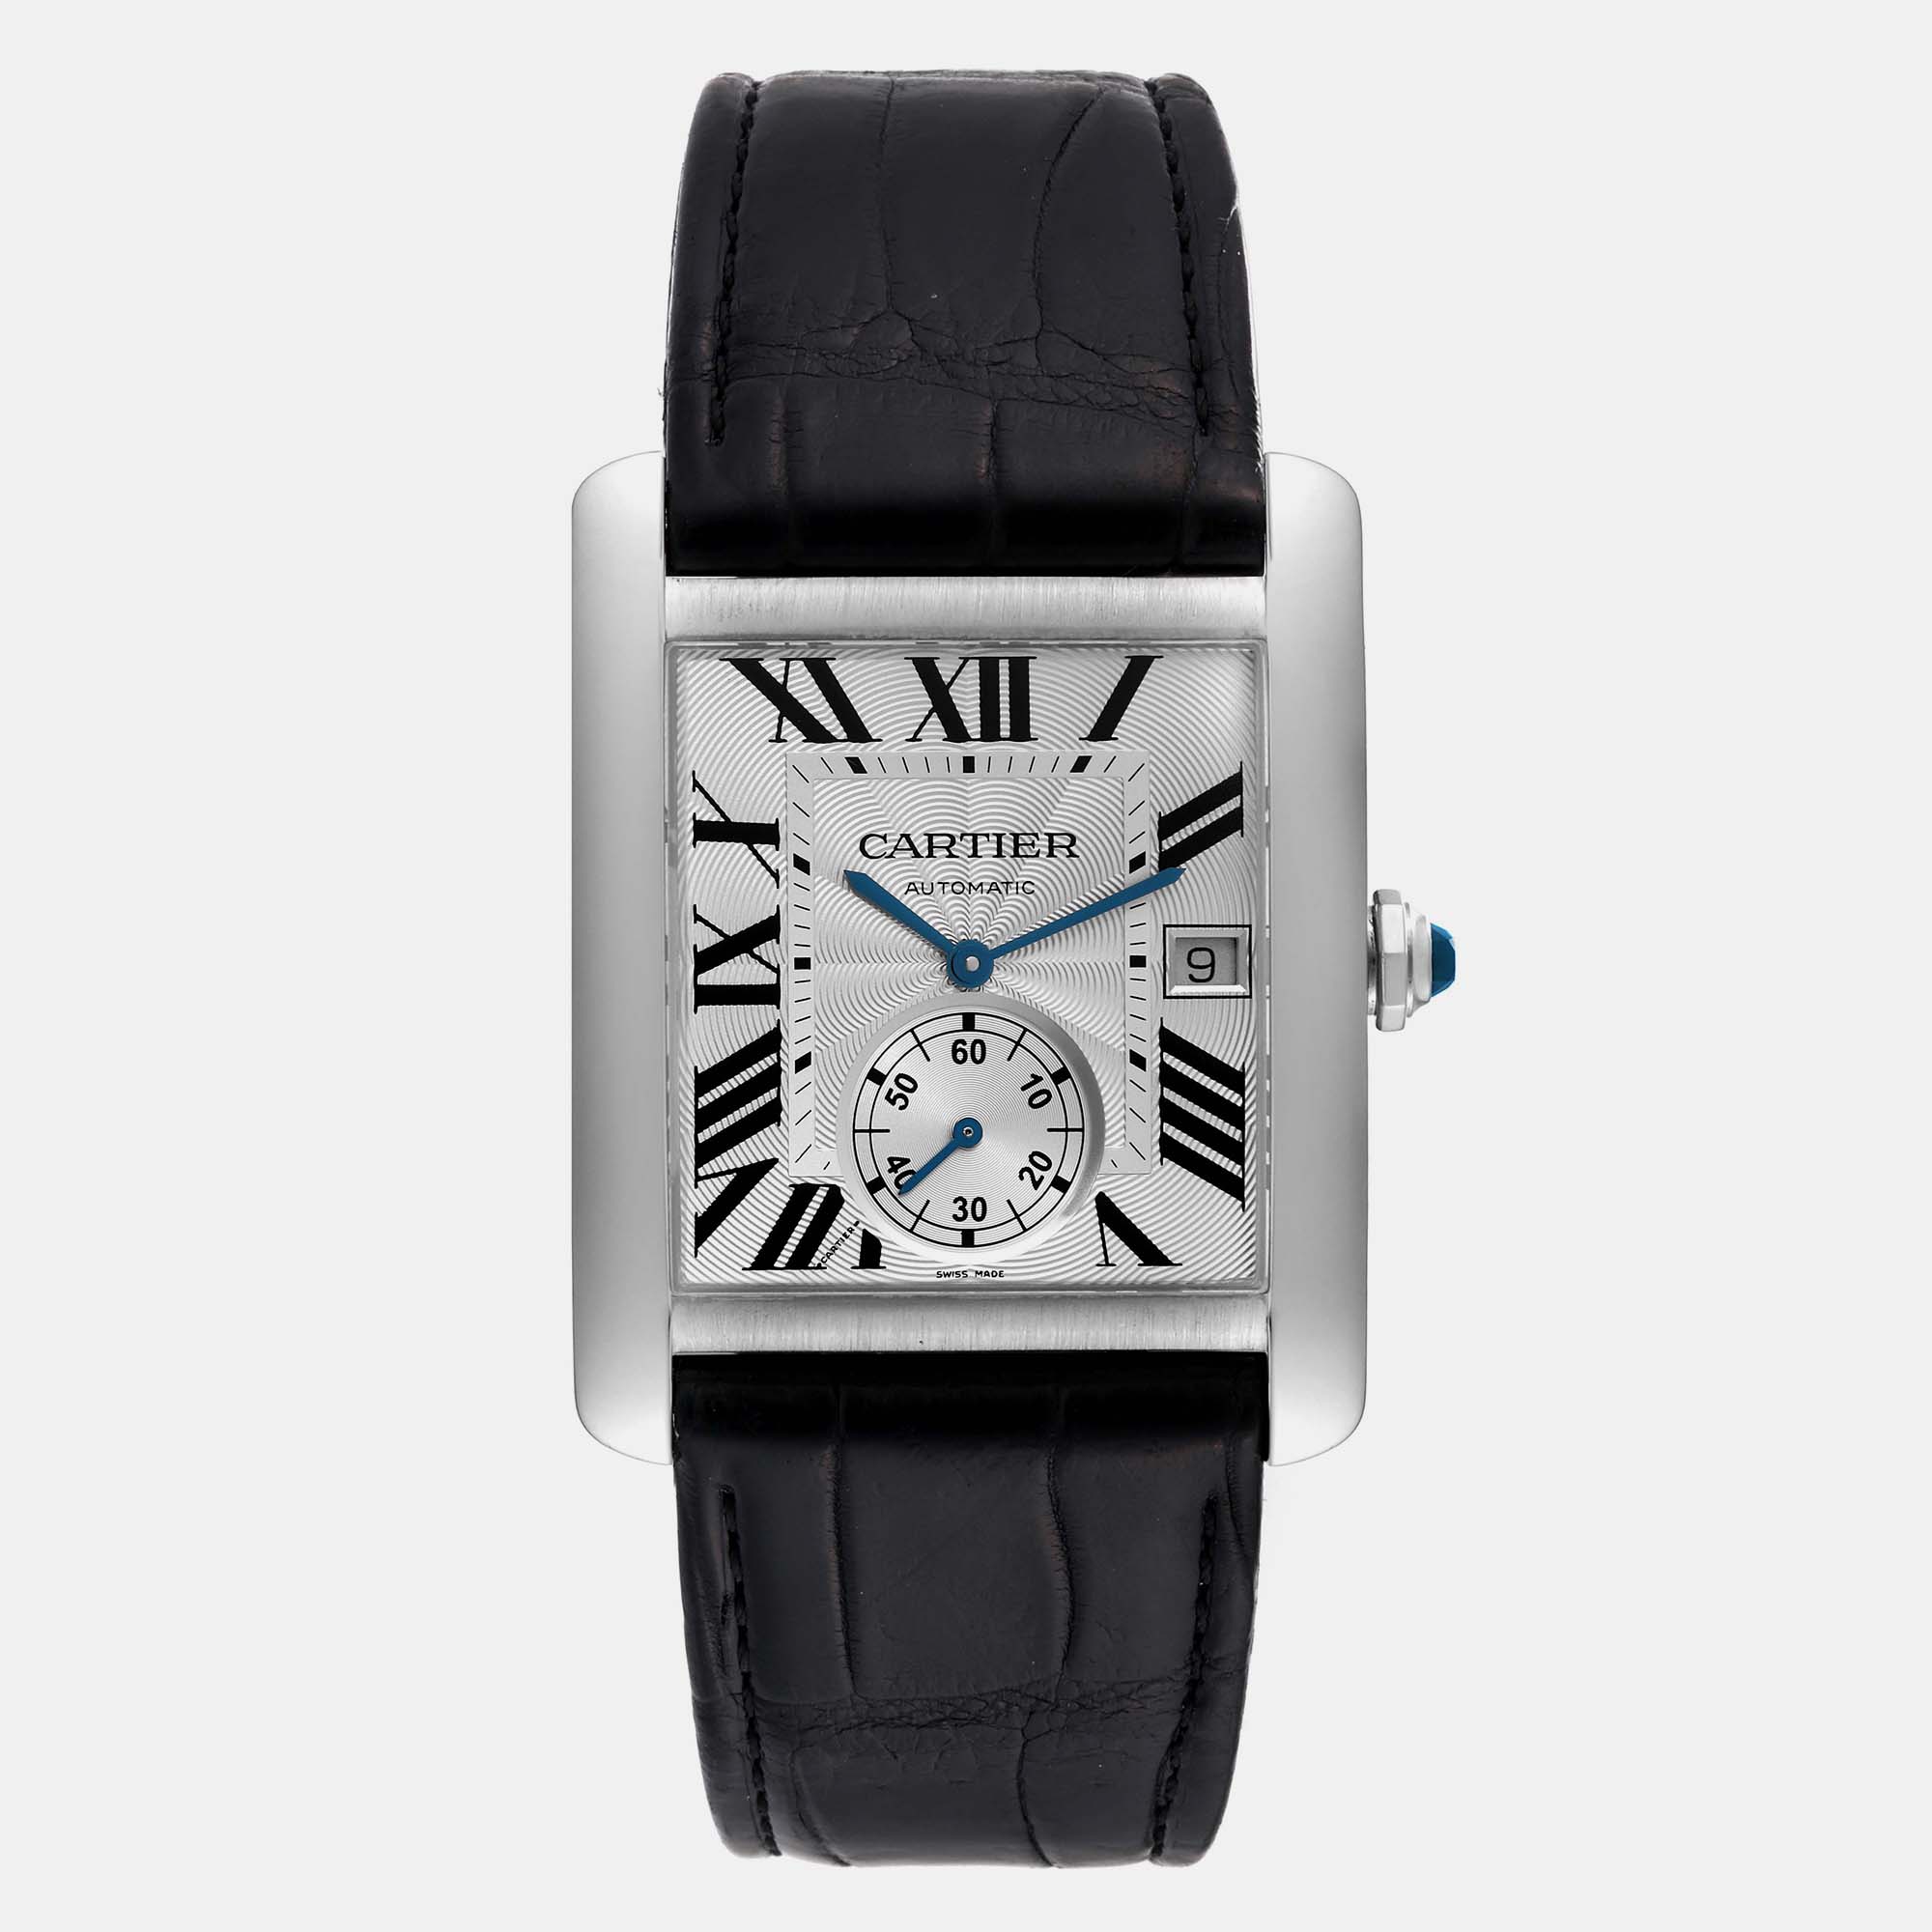 Cartier tank mc silver dial steel men's watch 34.3 mm